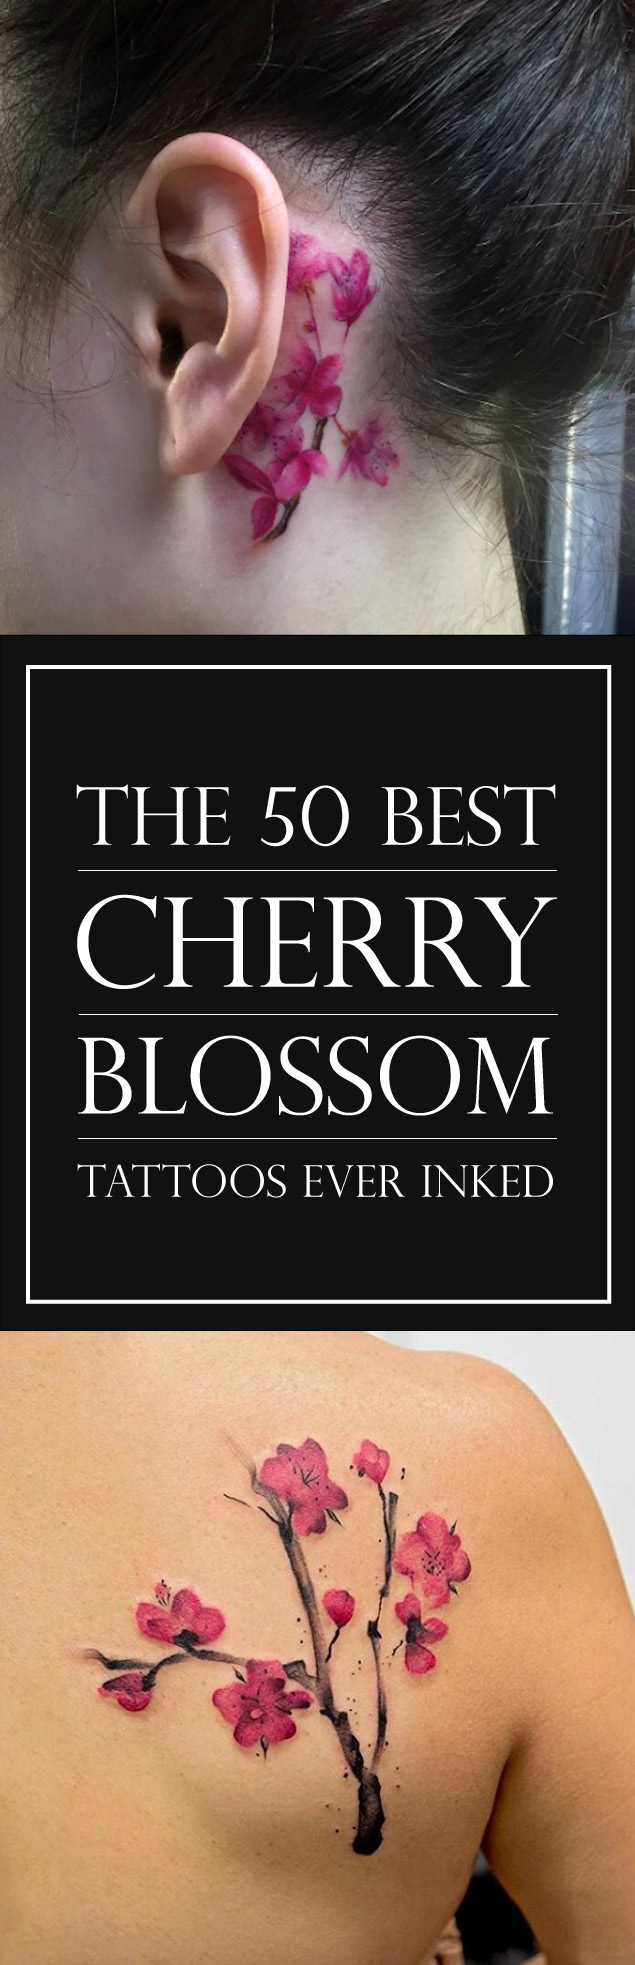 The 50 Best Cherry Blossom Tattoo Designs | TattooBlend